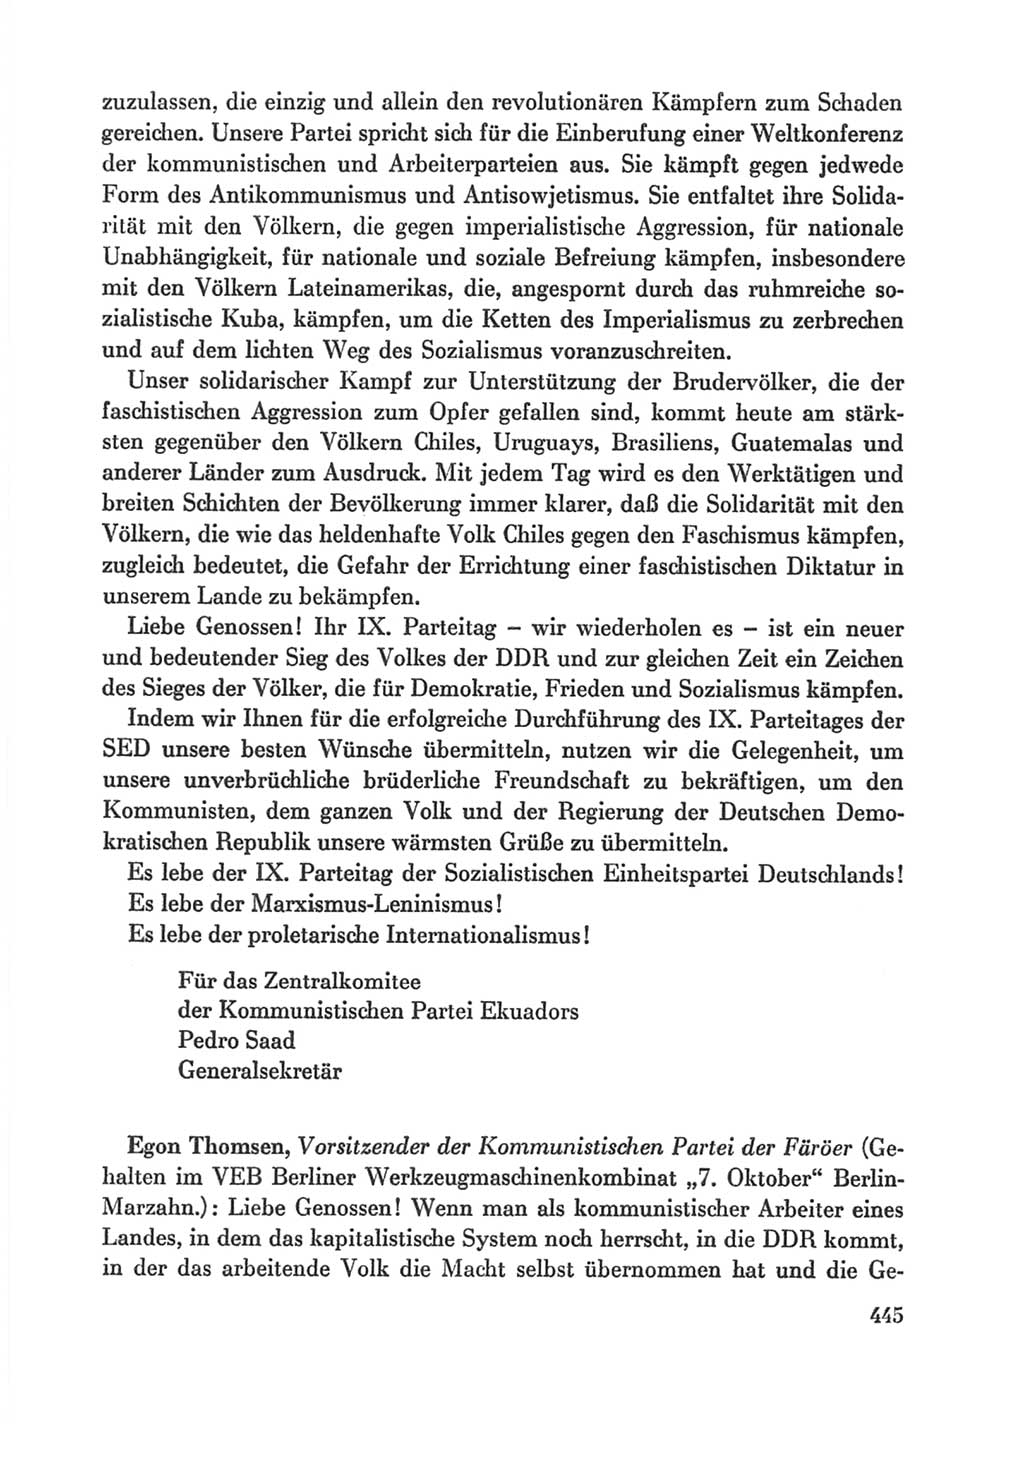 Protokoll der Verhandlungen des Ⅸ. Parteitages der Sozialistischen Einheitspartei Deutschlands (SED) [Deutsche Demokratische Republik (DDR)] 1976, Band 1, Seite 445 (Prot. Verh. Ⅸ. PT SED DDR 1976, Bd. 1, S. 445)